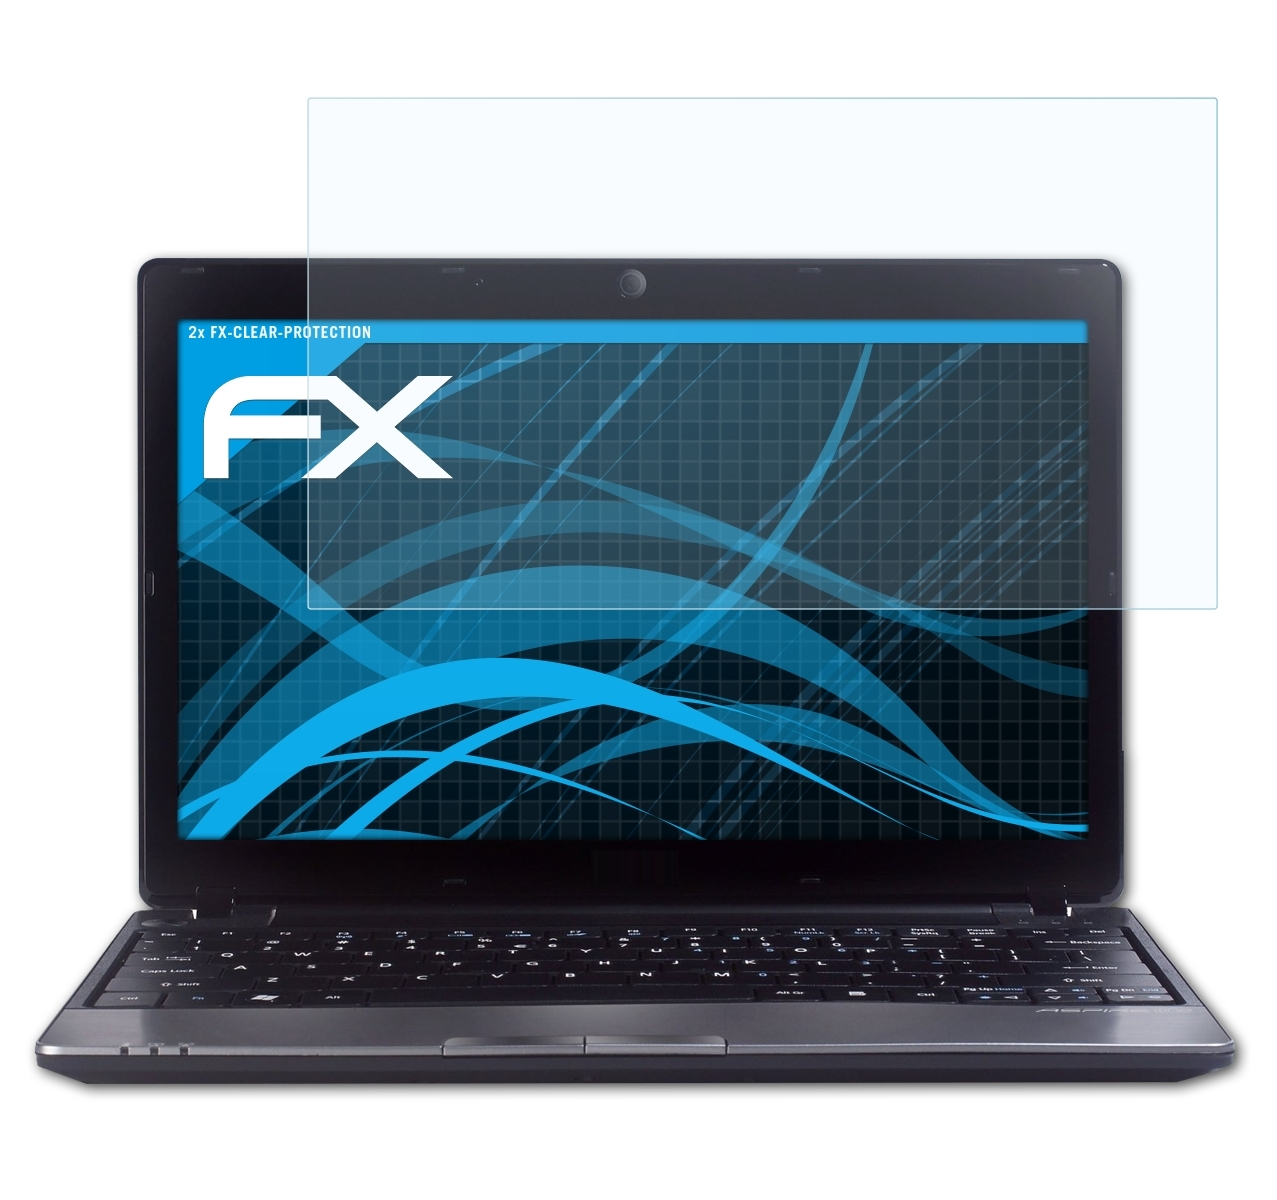 Aspire ATFOLIX 2x 721) Displayschutz(für FX-Clear Acer One